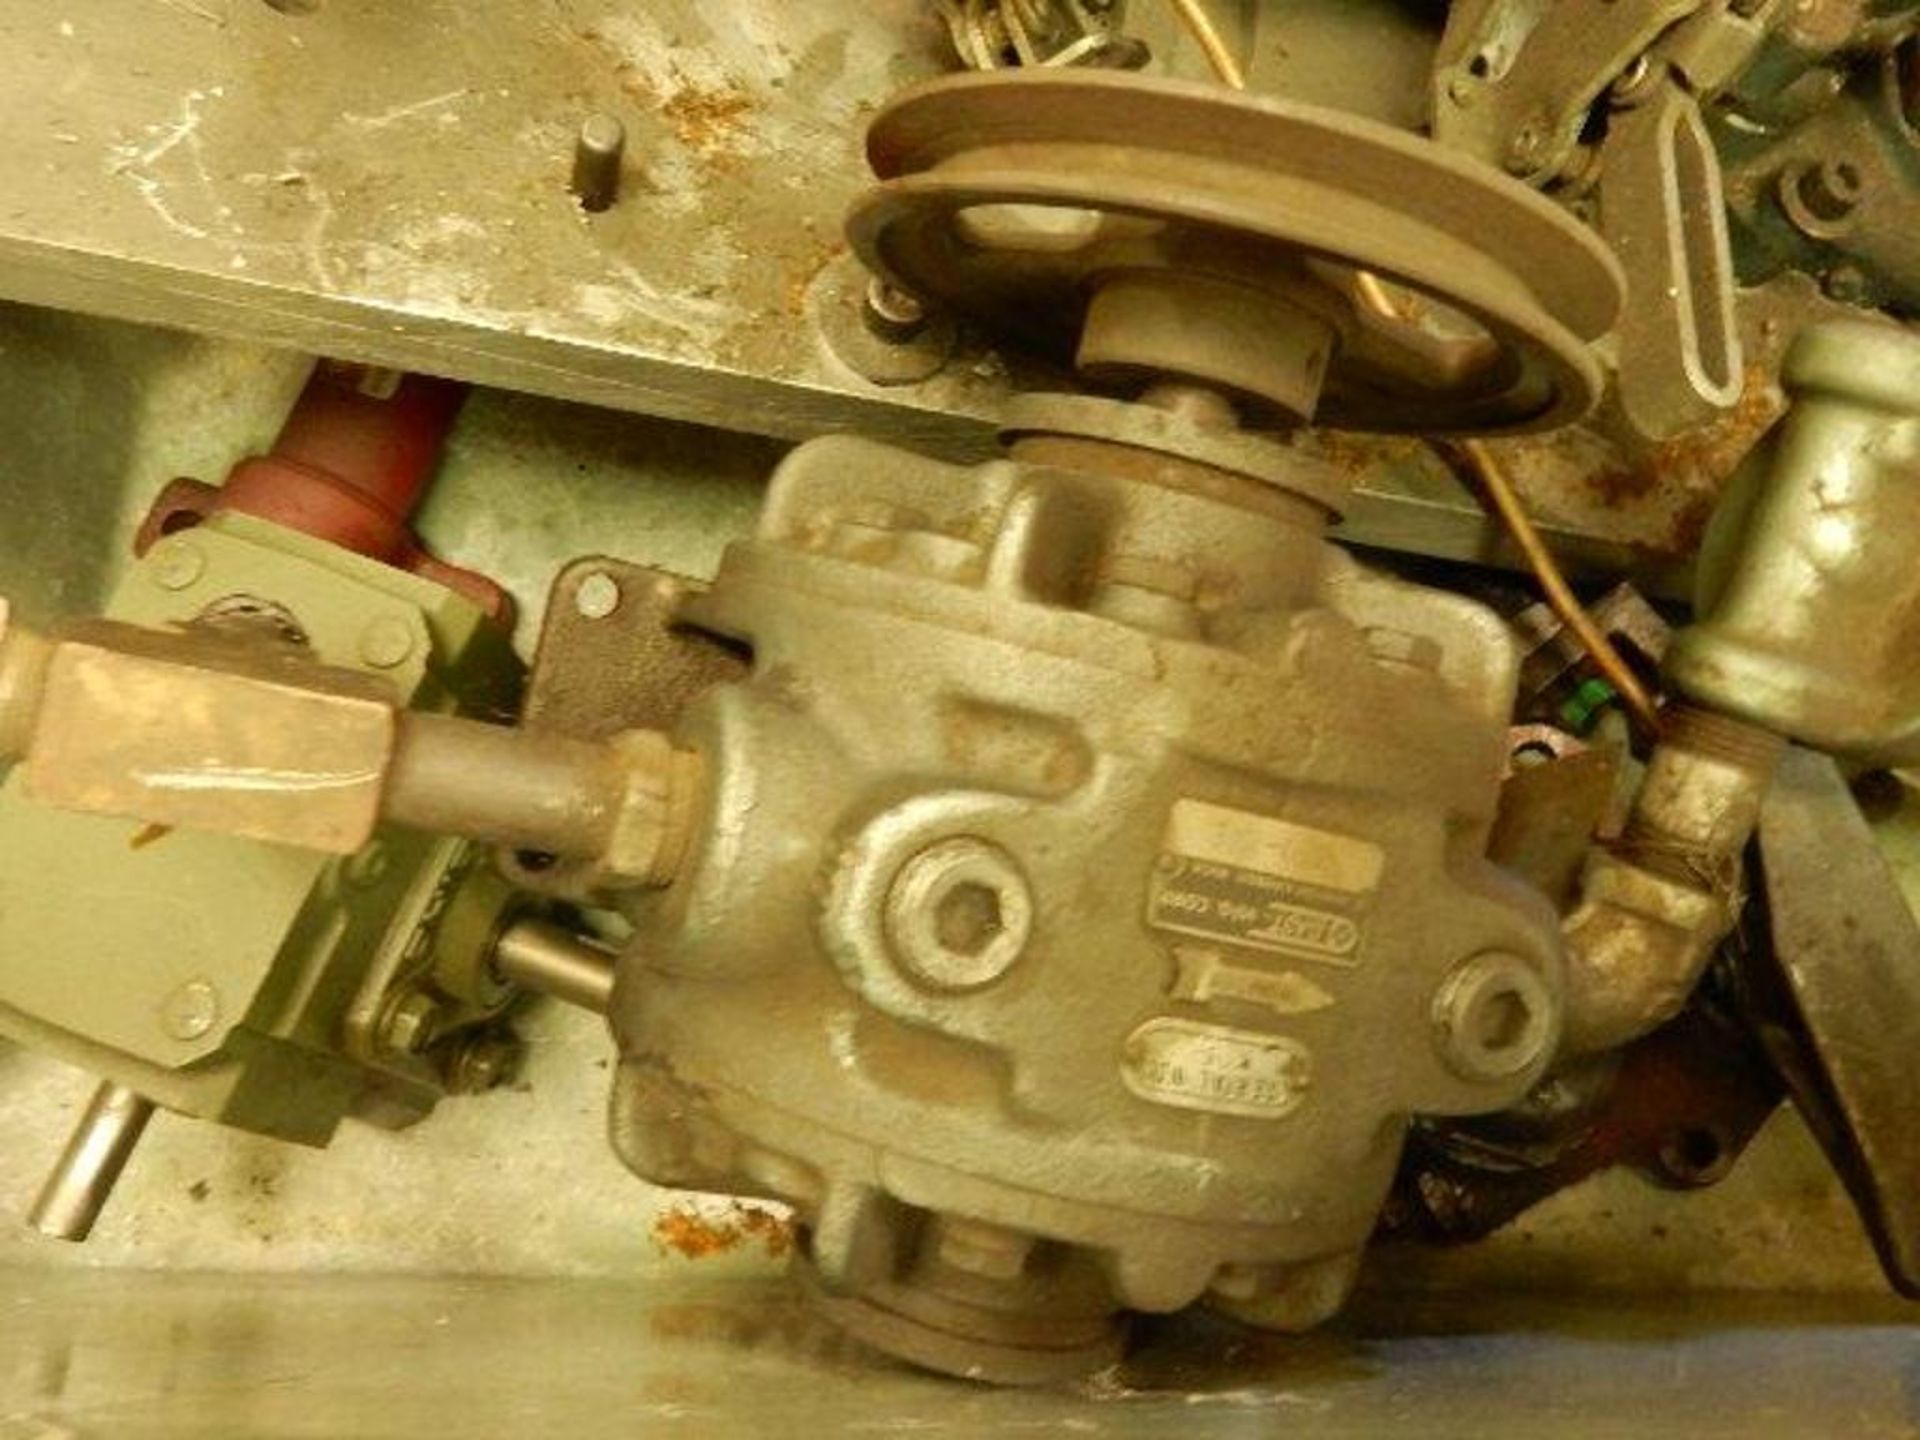 Fixture Components & Vacuum Pump - Image 2 of 4